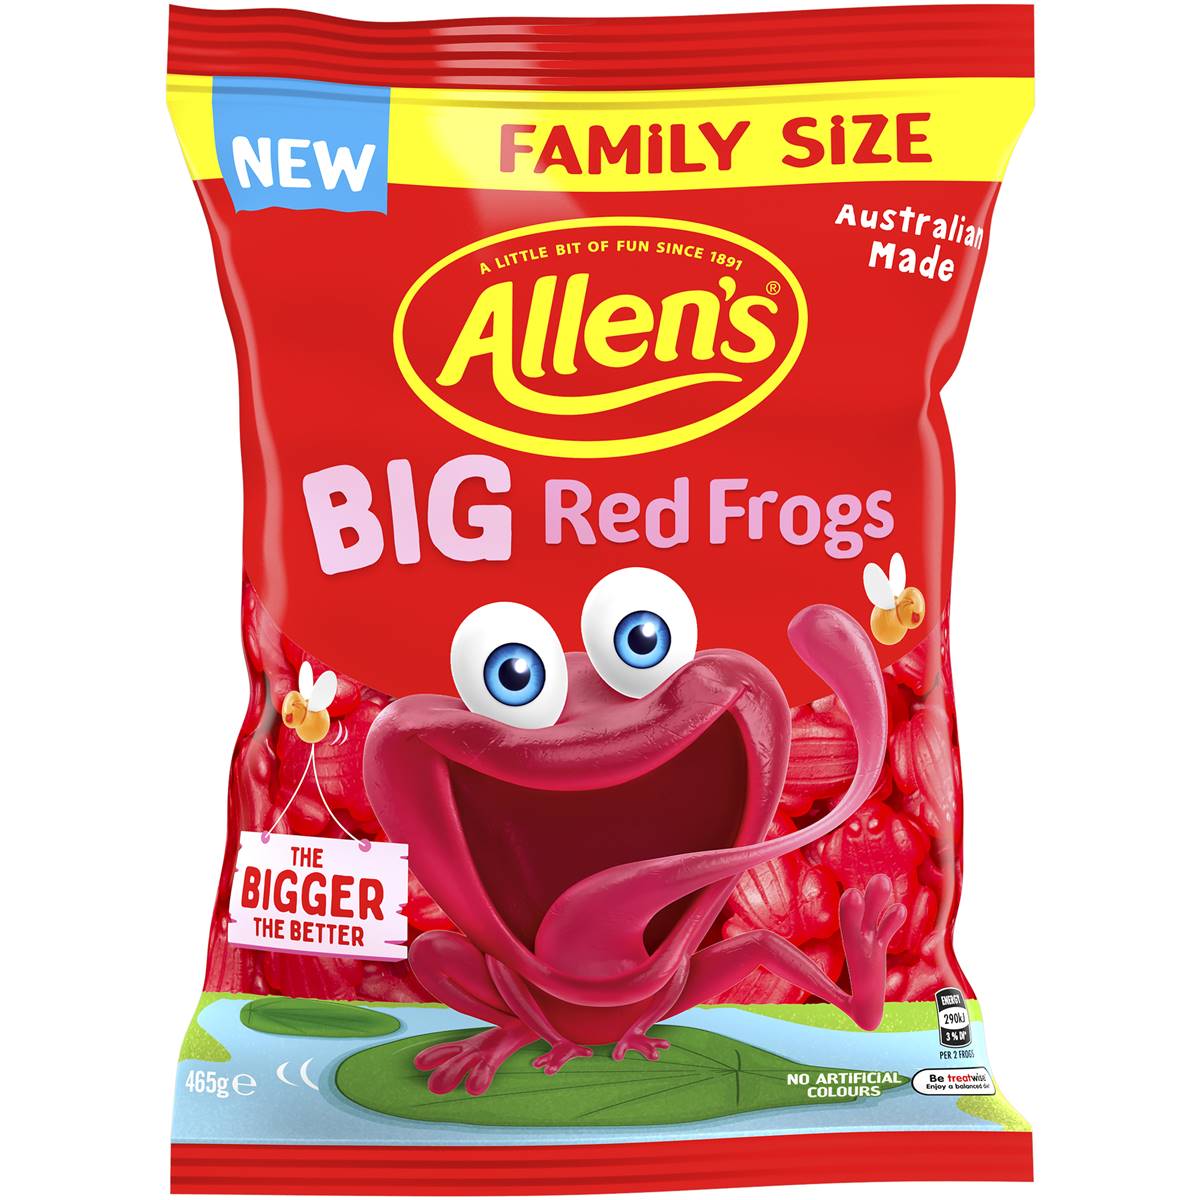 Calories in Allen's Big Red Frogs